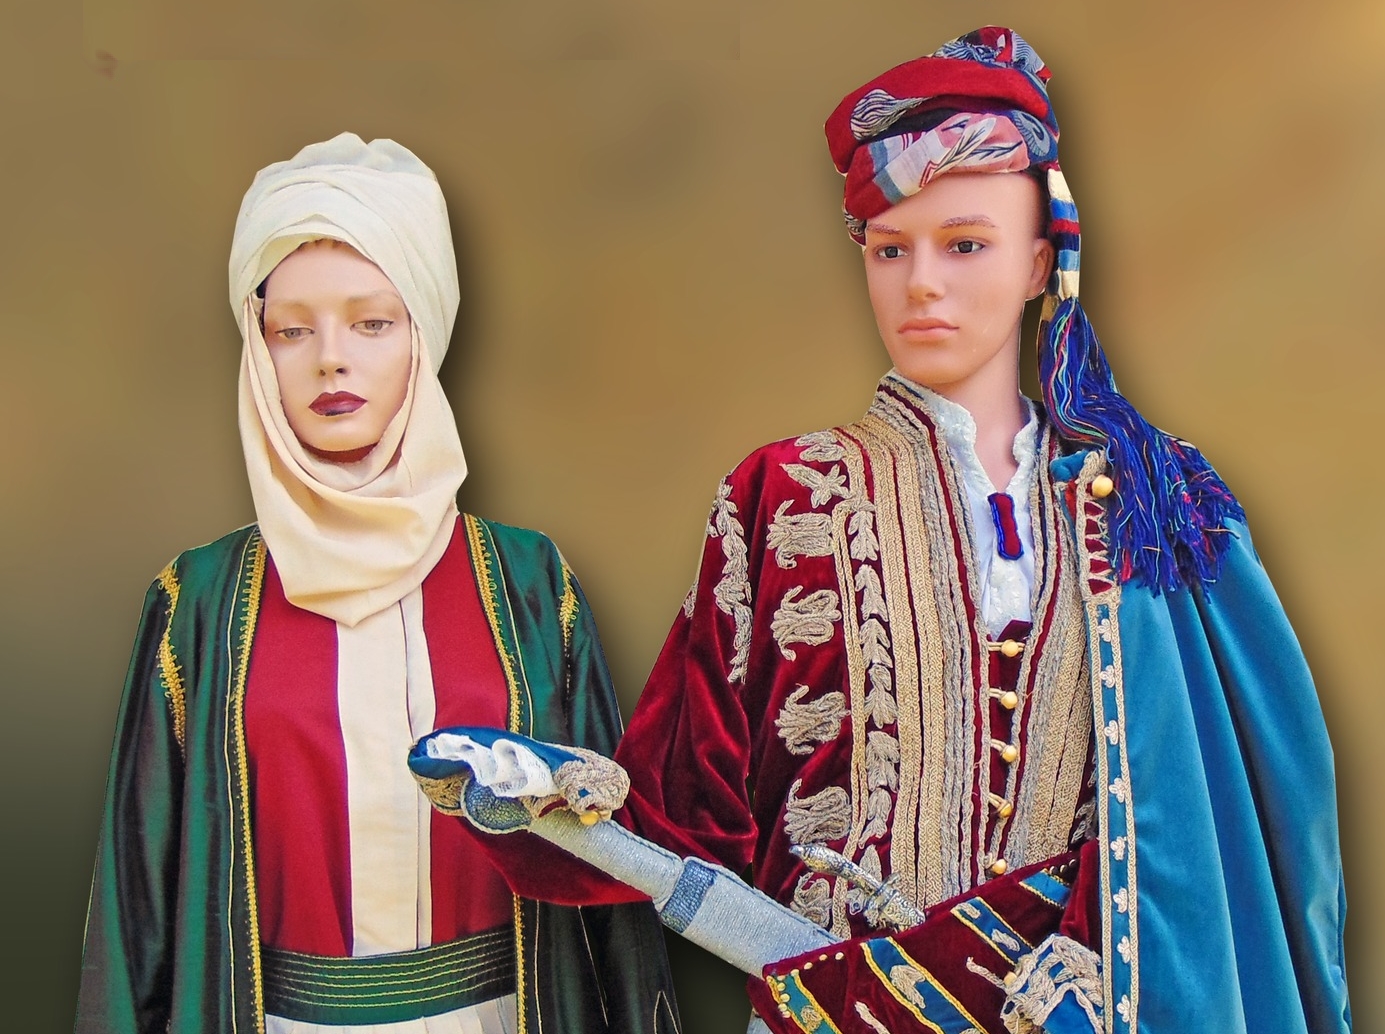 Έκθεση του Εργαστηρίου Παραδοσιακών Φορεσιών της Νίκης Κούρταλη-Κούλη στο Πολεμικό Μουσείο Τρίπολης